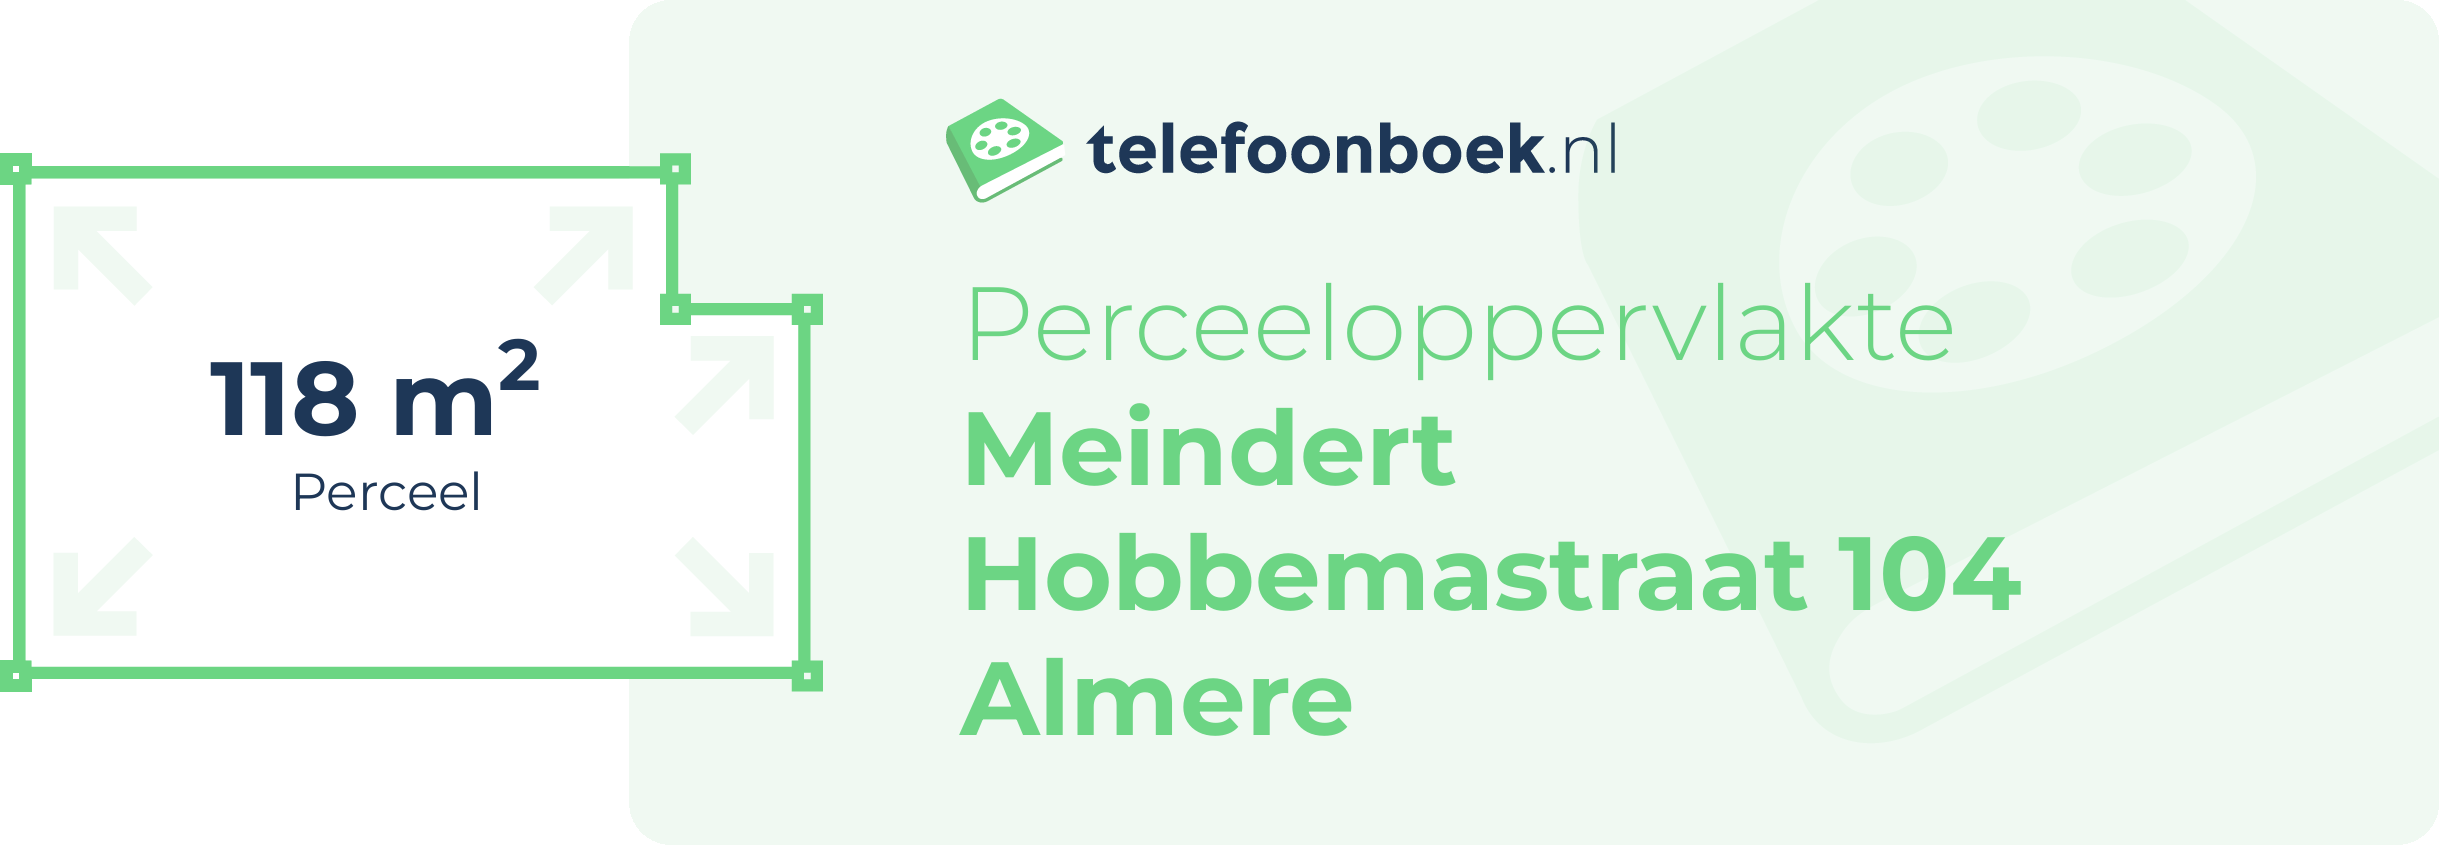 Perceeloppervlakte Meindert Hobbemastraat 104 Almere